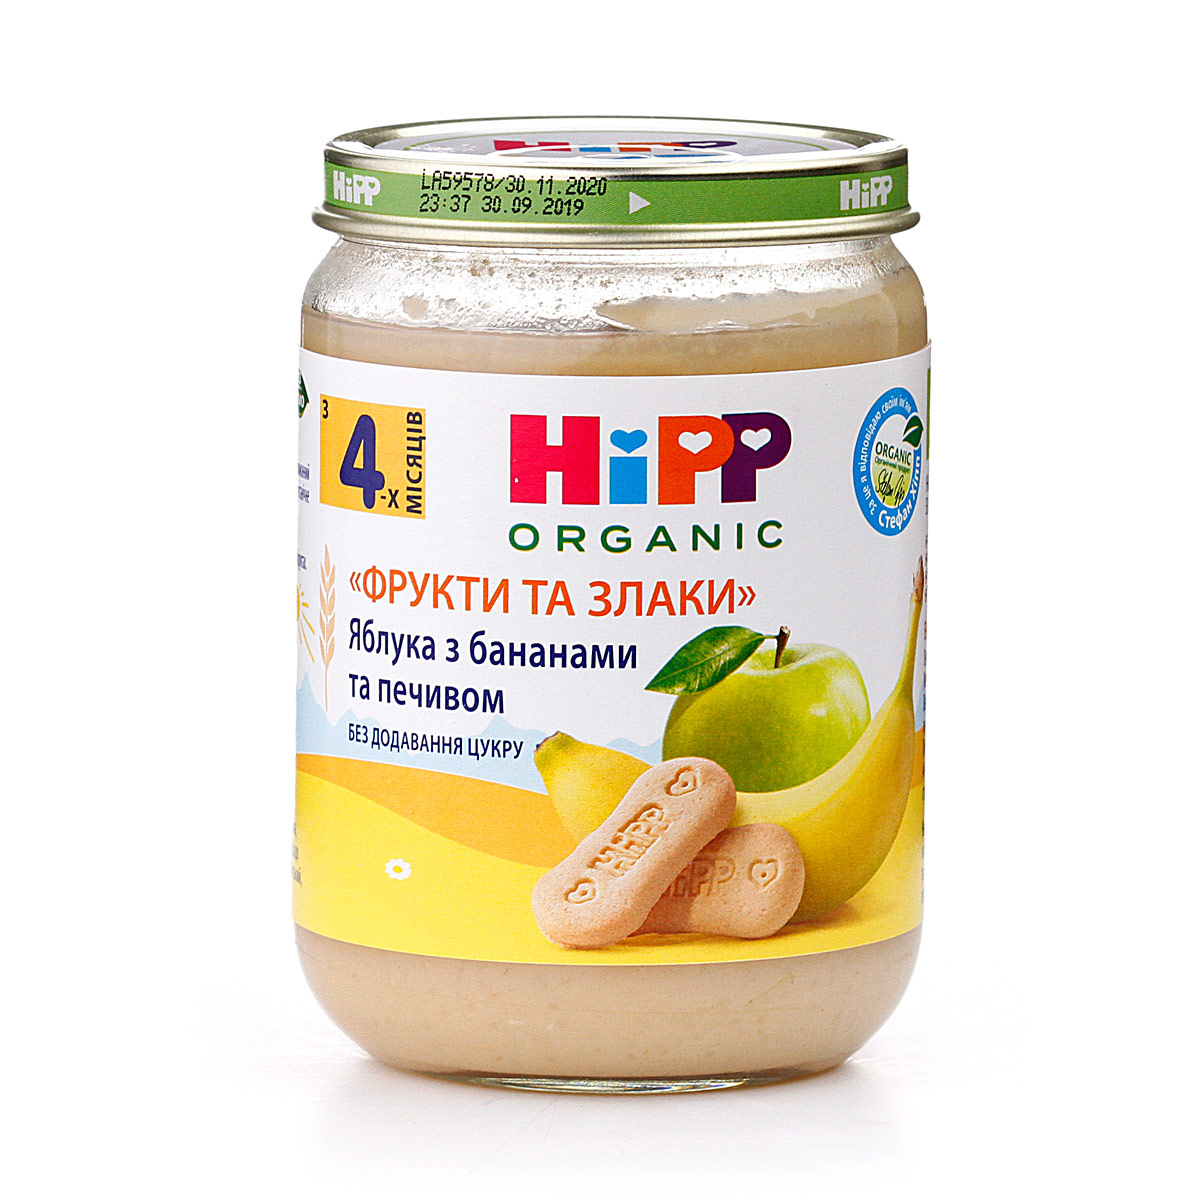 Яблука з бананами та печивом «Фрукти та злаки» - фото 6 | Интернет-магазин Shop HiPP